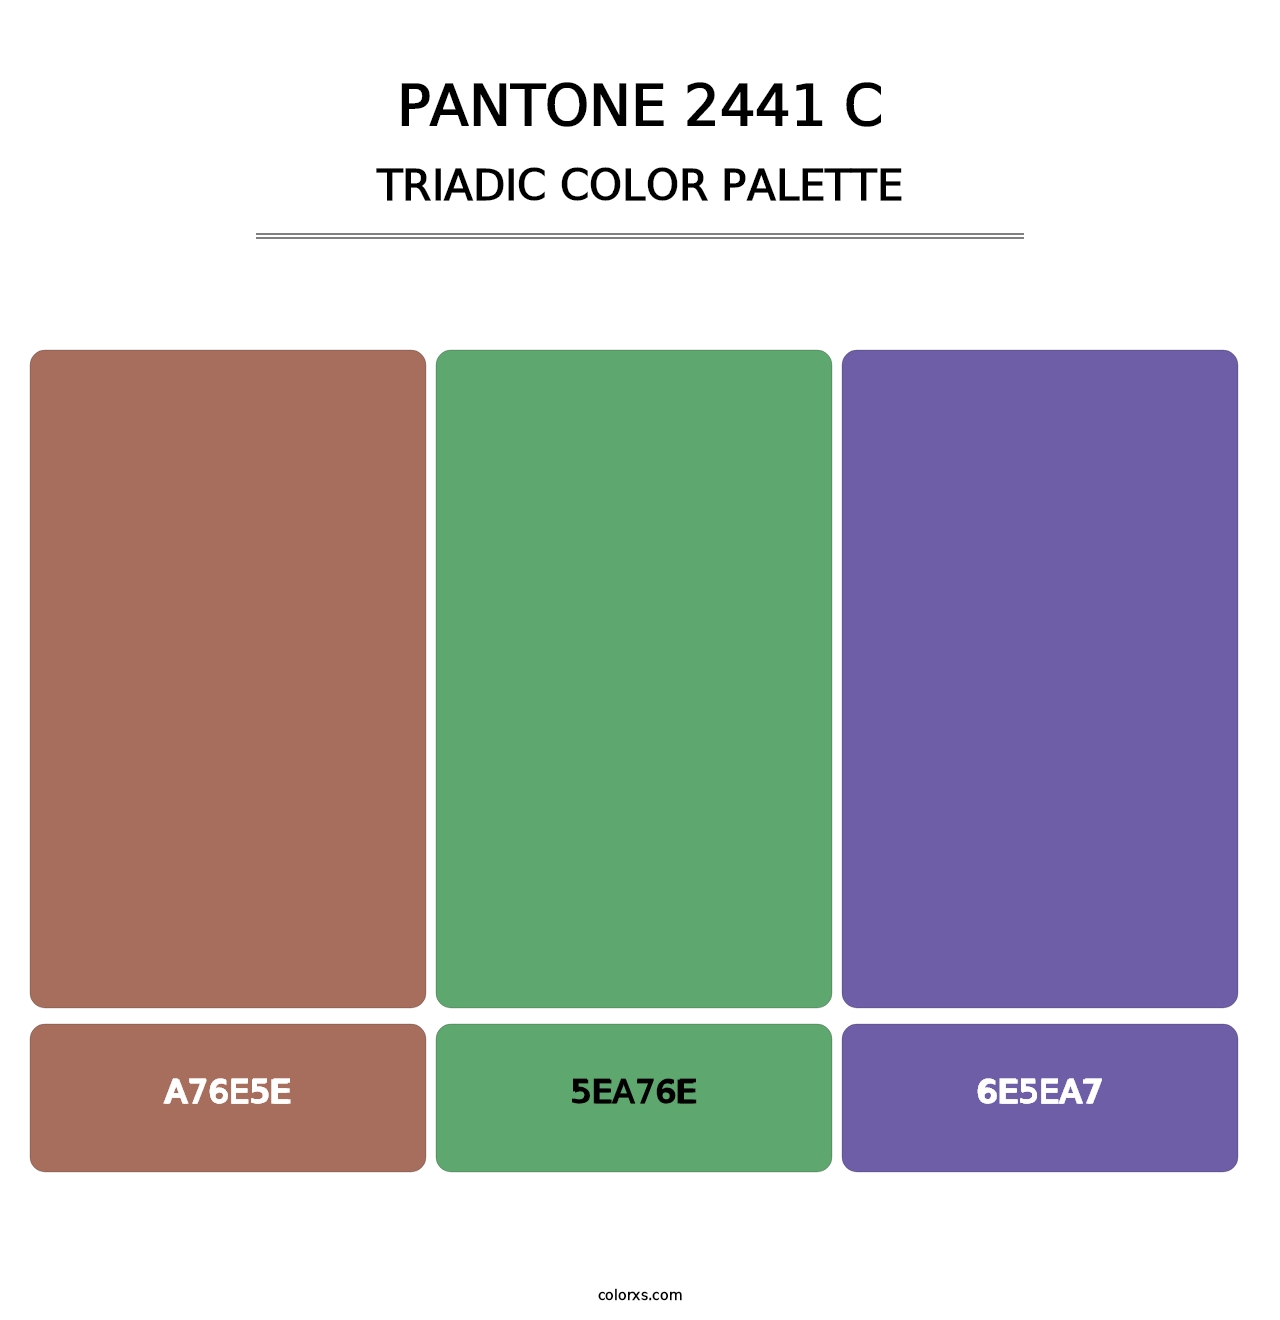 PANTONE 2441 C - Triadic Color Palette